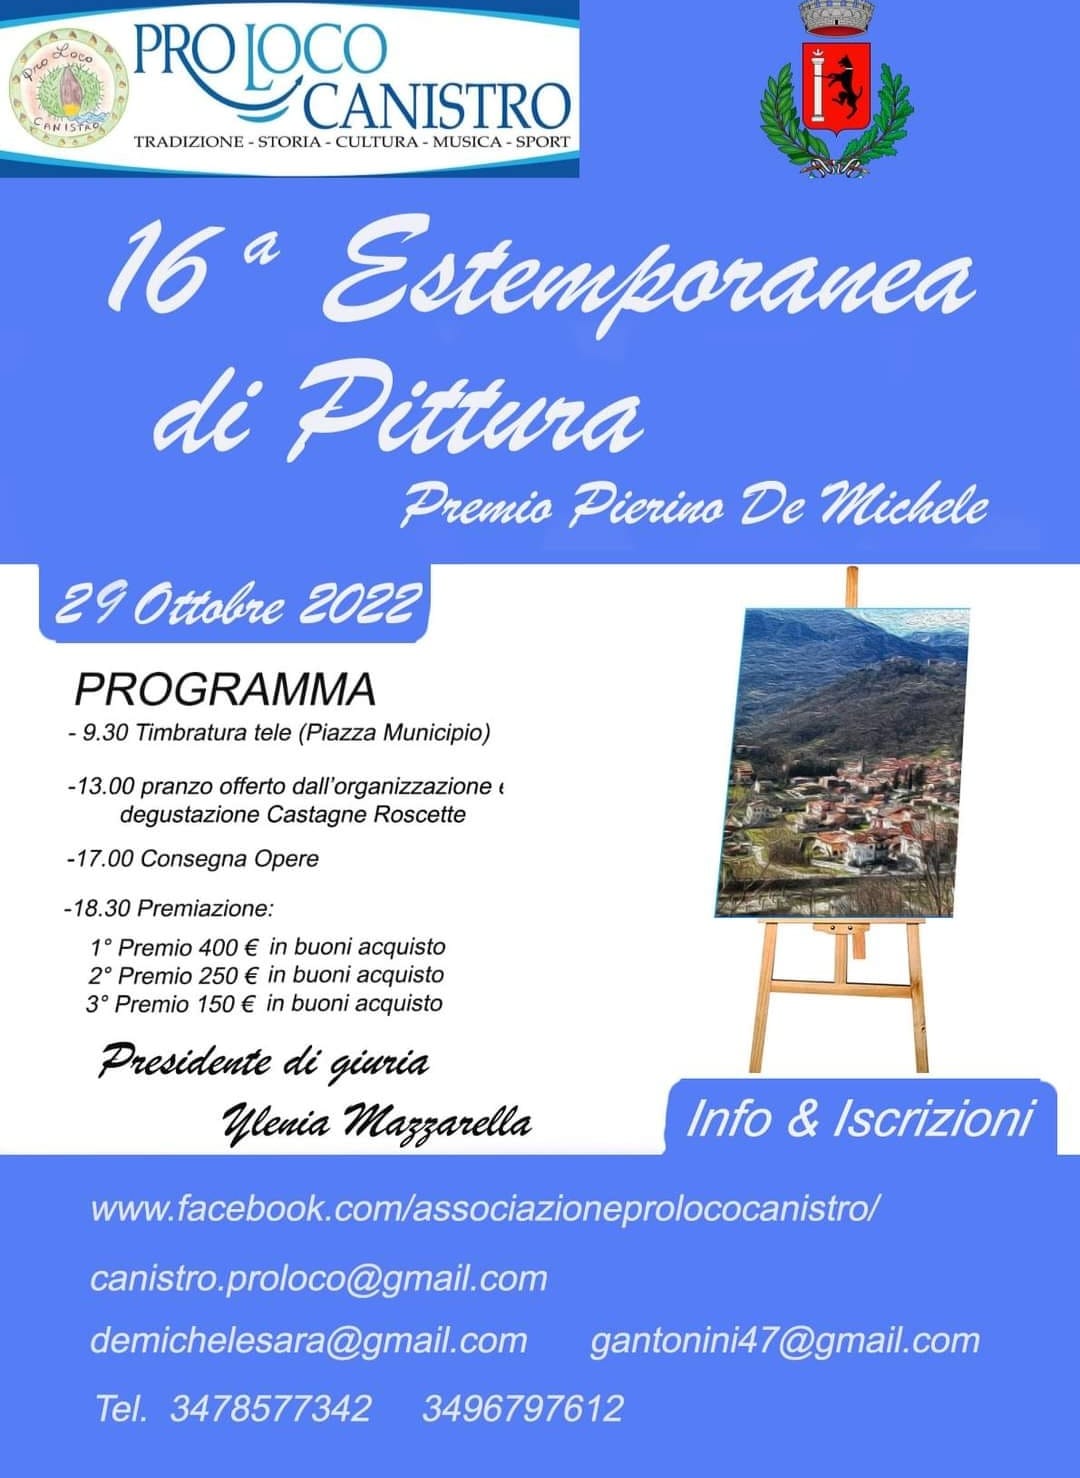 16' Estemporanea di Pittura, Premio Pierino De Michele